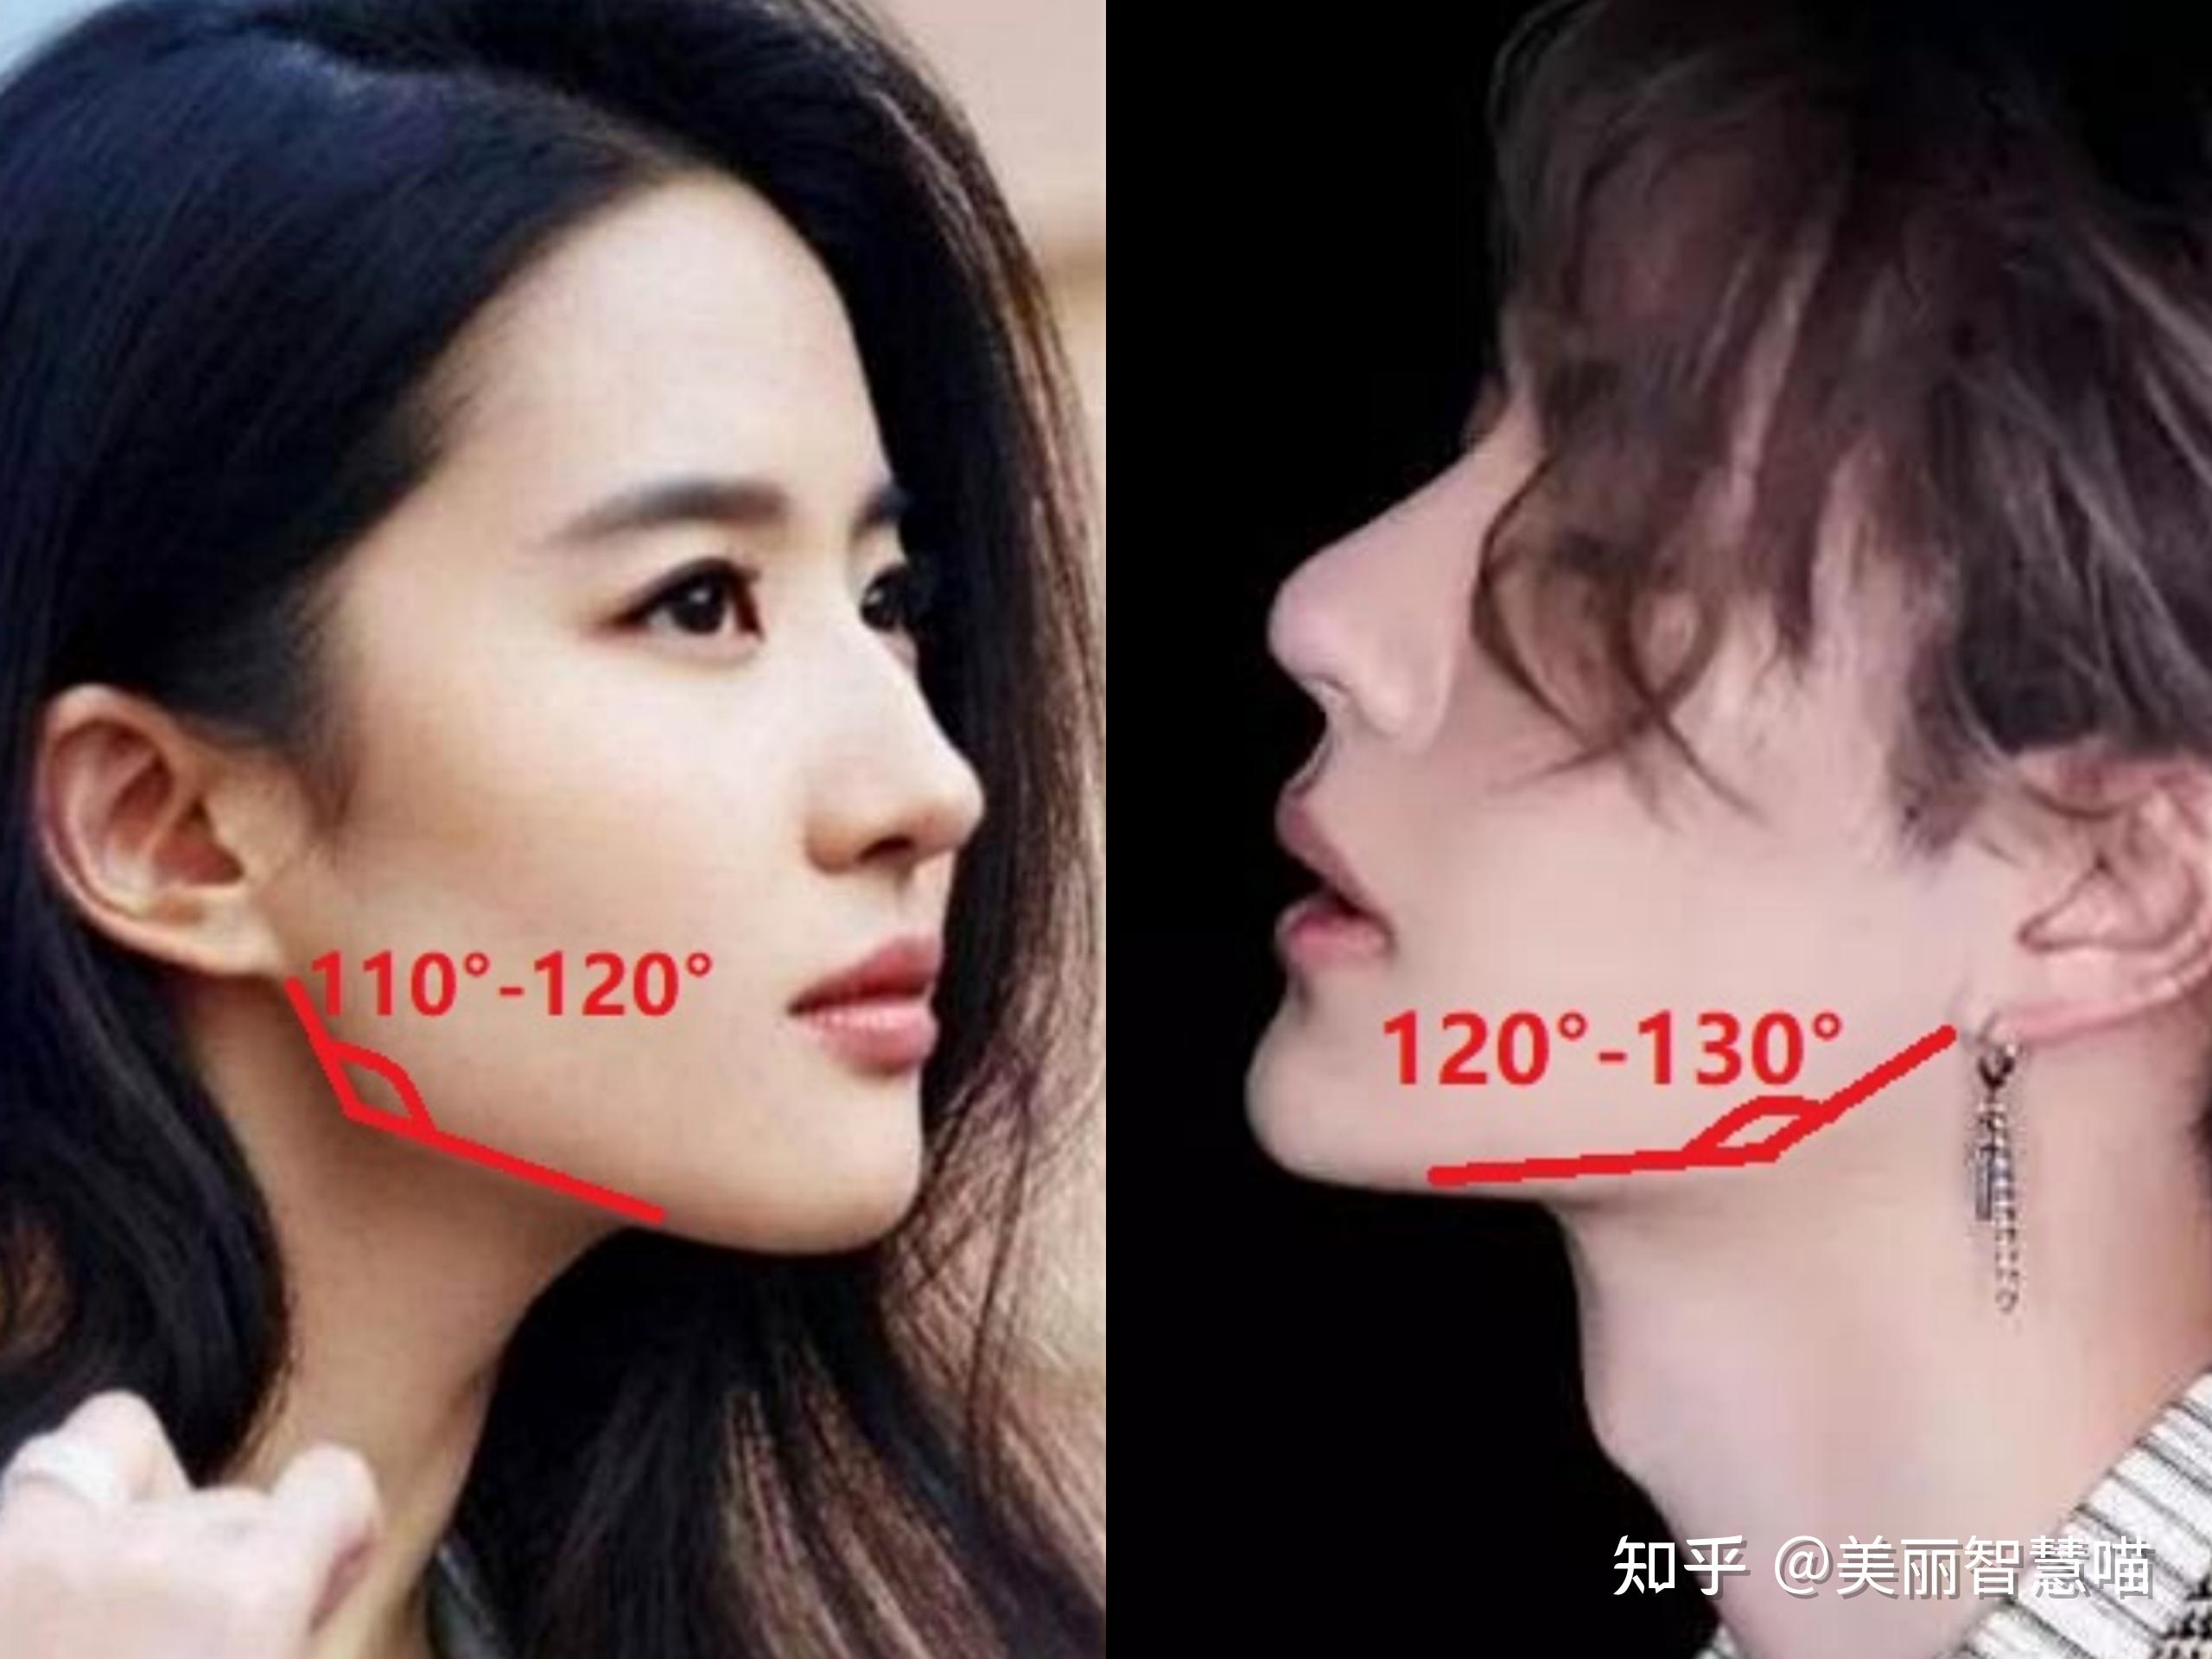 一般来说,比较标准的下颌角角度范围女性的是在110~120°左右,男性